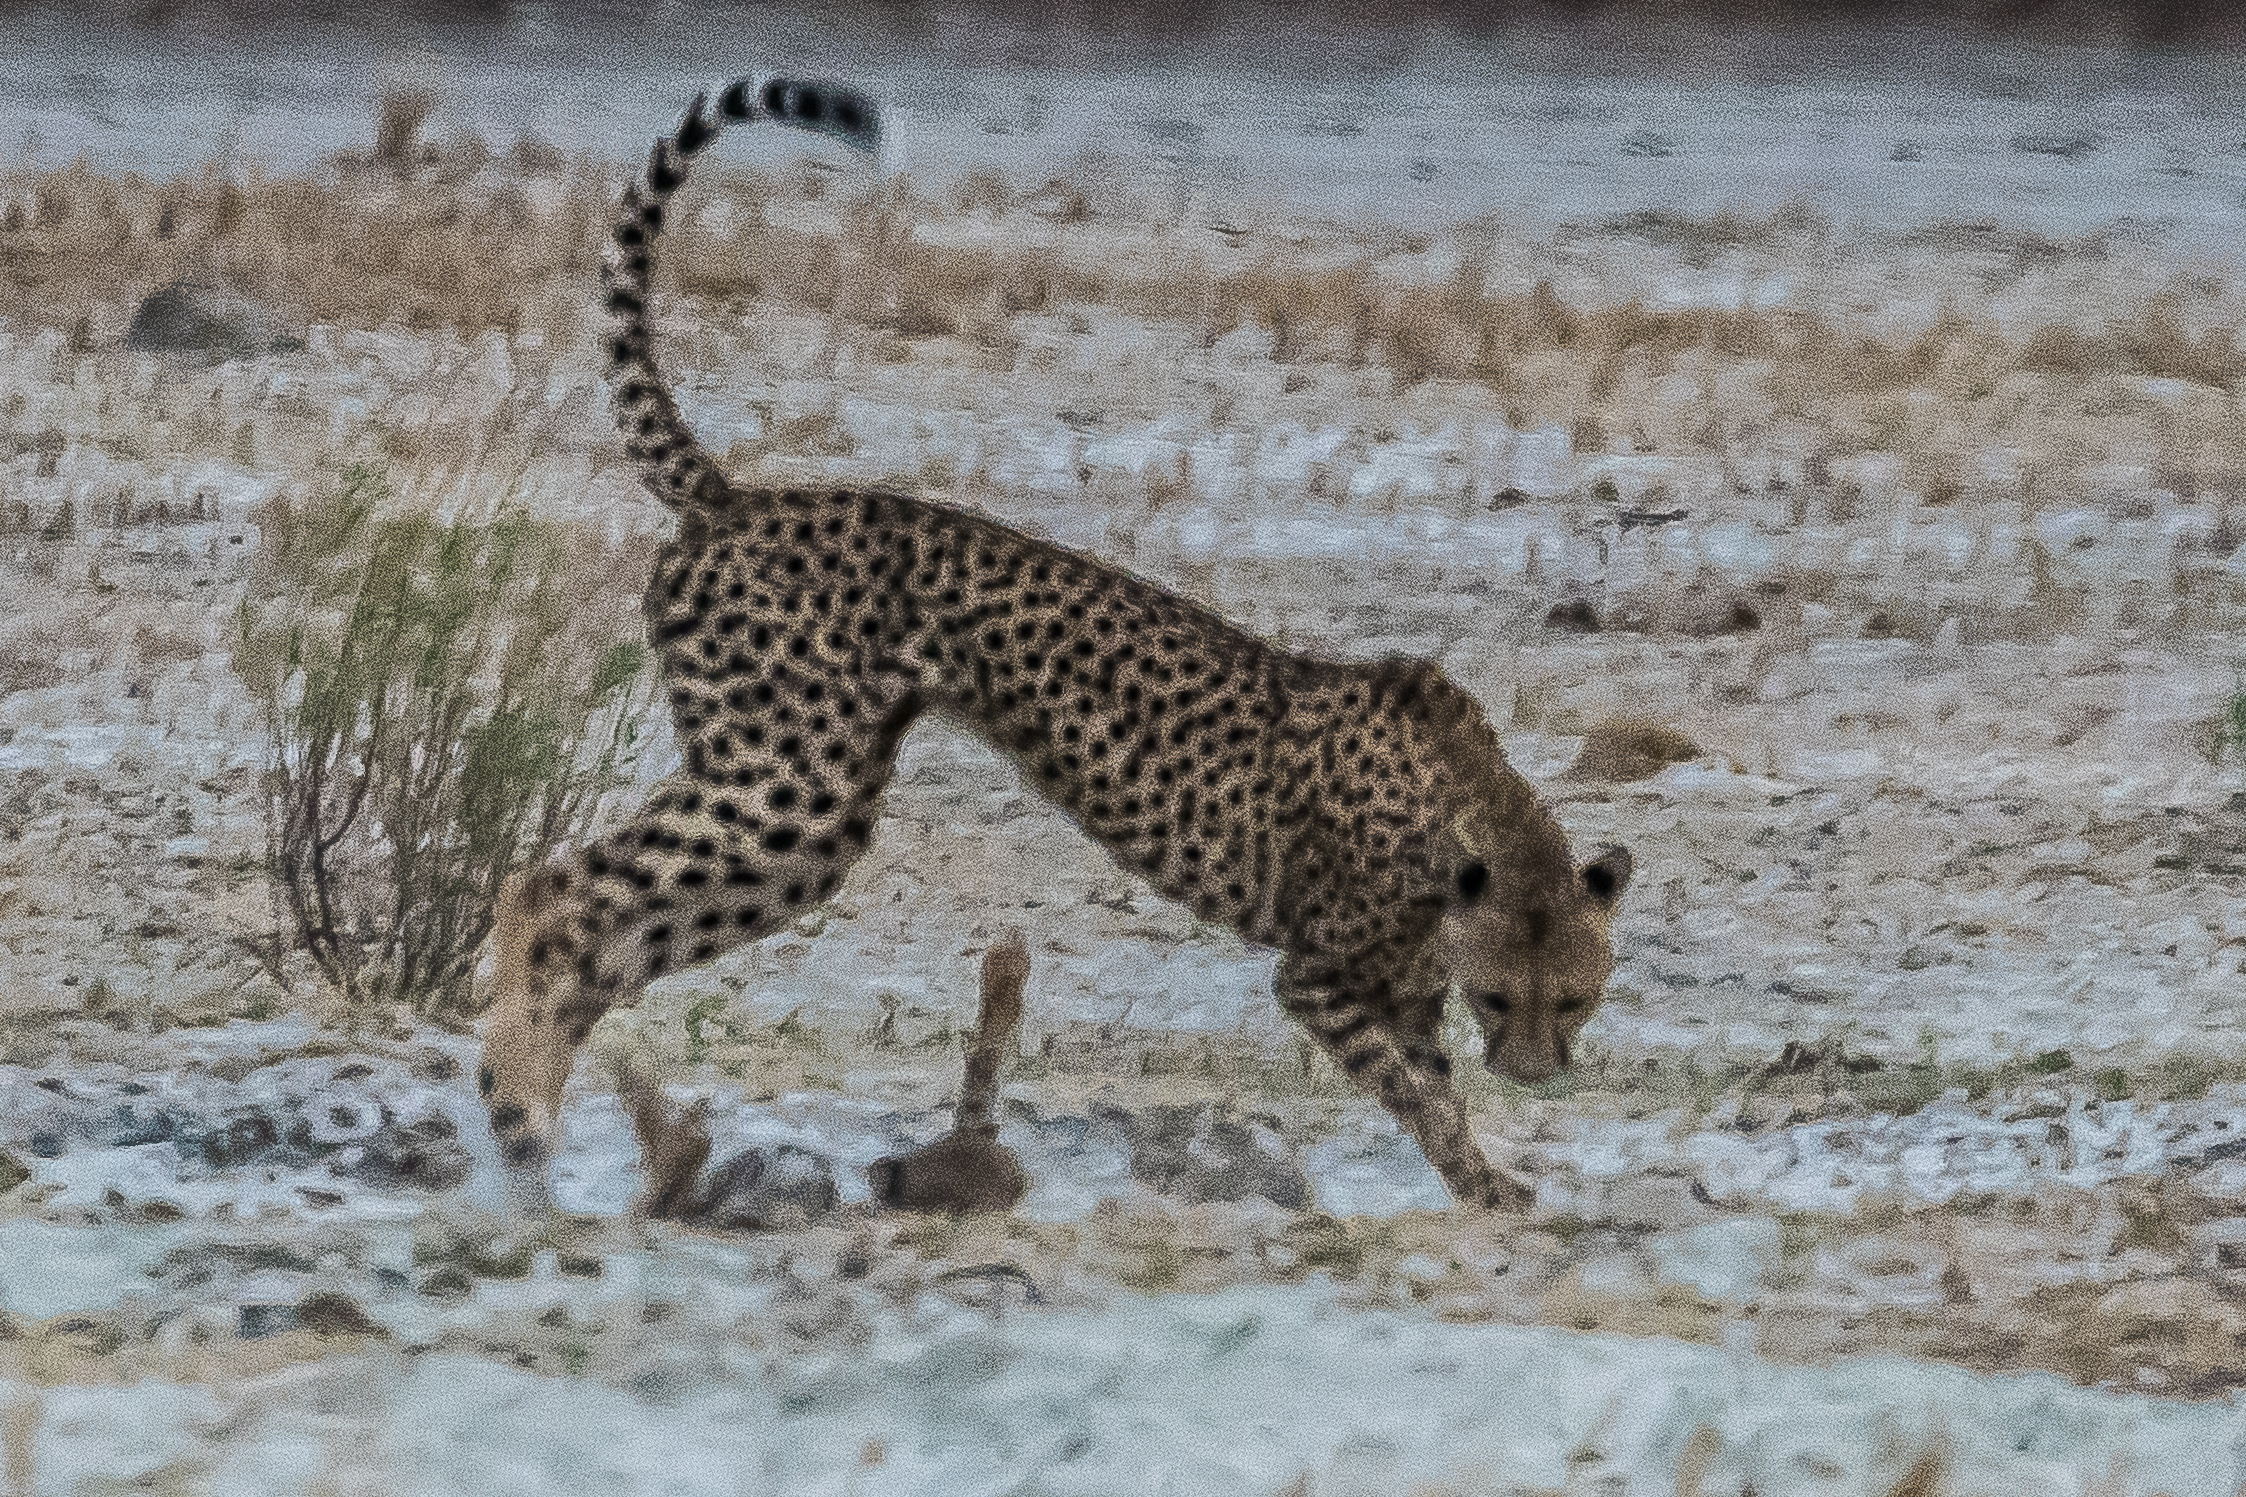 Femelle Guépard (Cheetah, Acinonyx jubatus) surveillant les jeux auxquels se livrent ses petits au fonds d'une excavation, Onguma Nature Reserve, Etosha, Namibie.